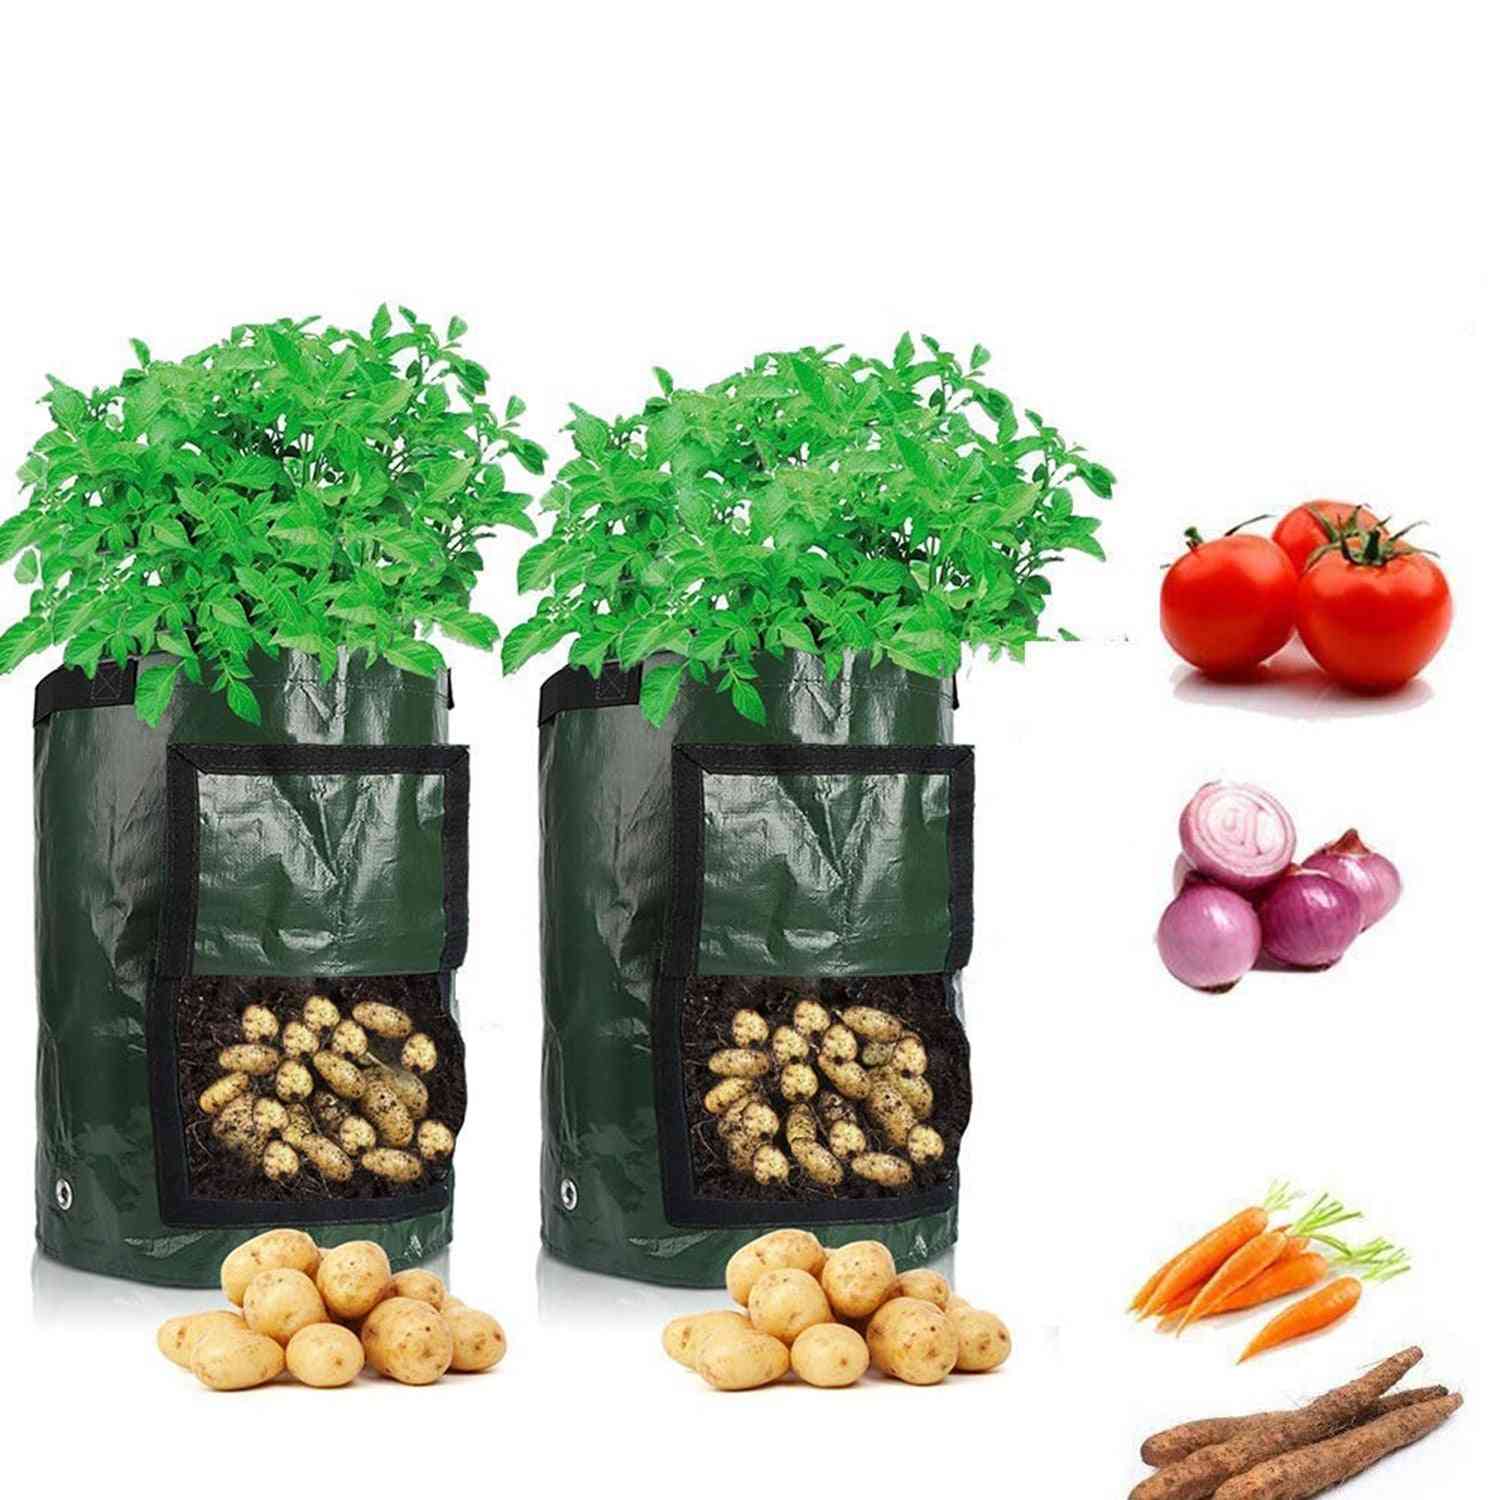 Potetdyrking, hage grønnsaksplanting vevde stoffposer - grønn 3 gallon